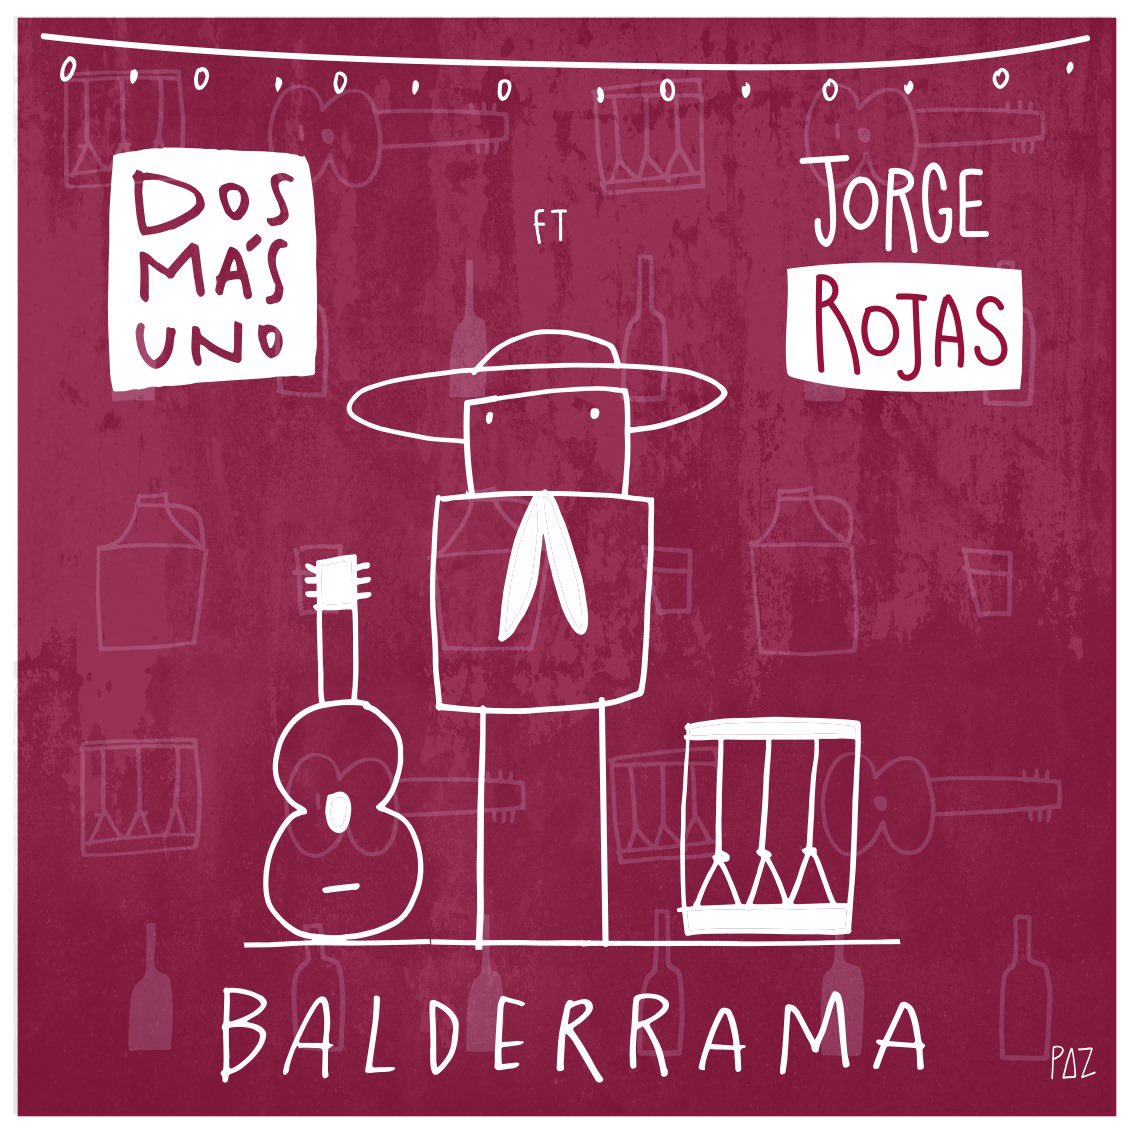 Dos Más Uno ft. Jorge Rojas - Balderrama ya disponible en plataformas 🔥🔥🔥 Escúchala acá 👇🏻 open.spotify.com/track/51xvRP67…